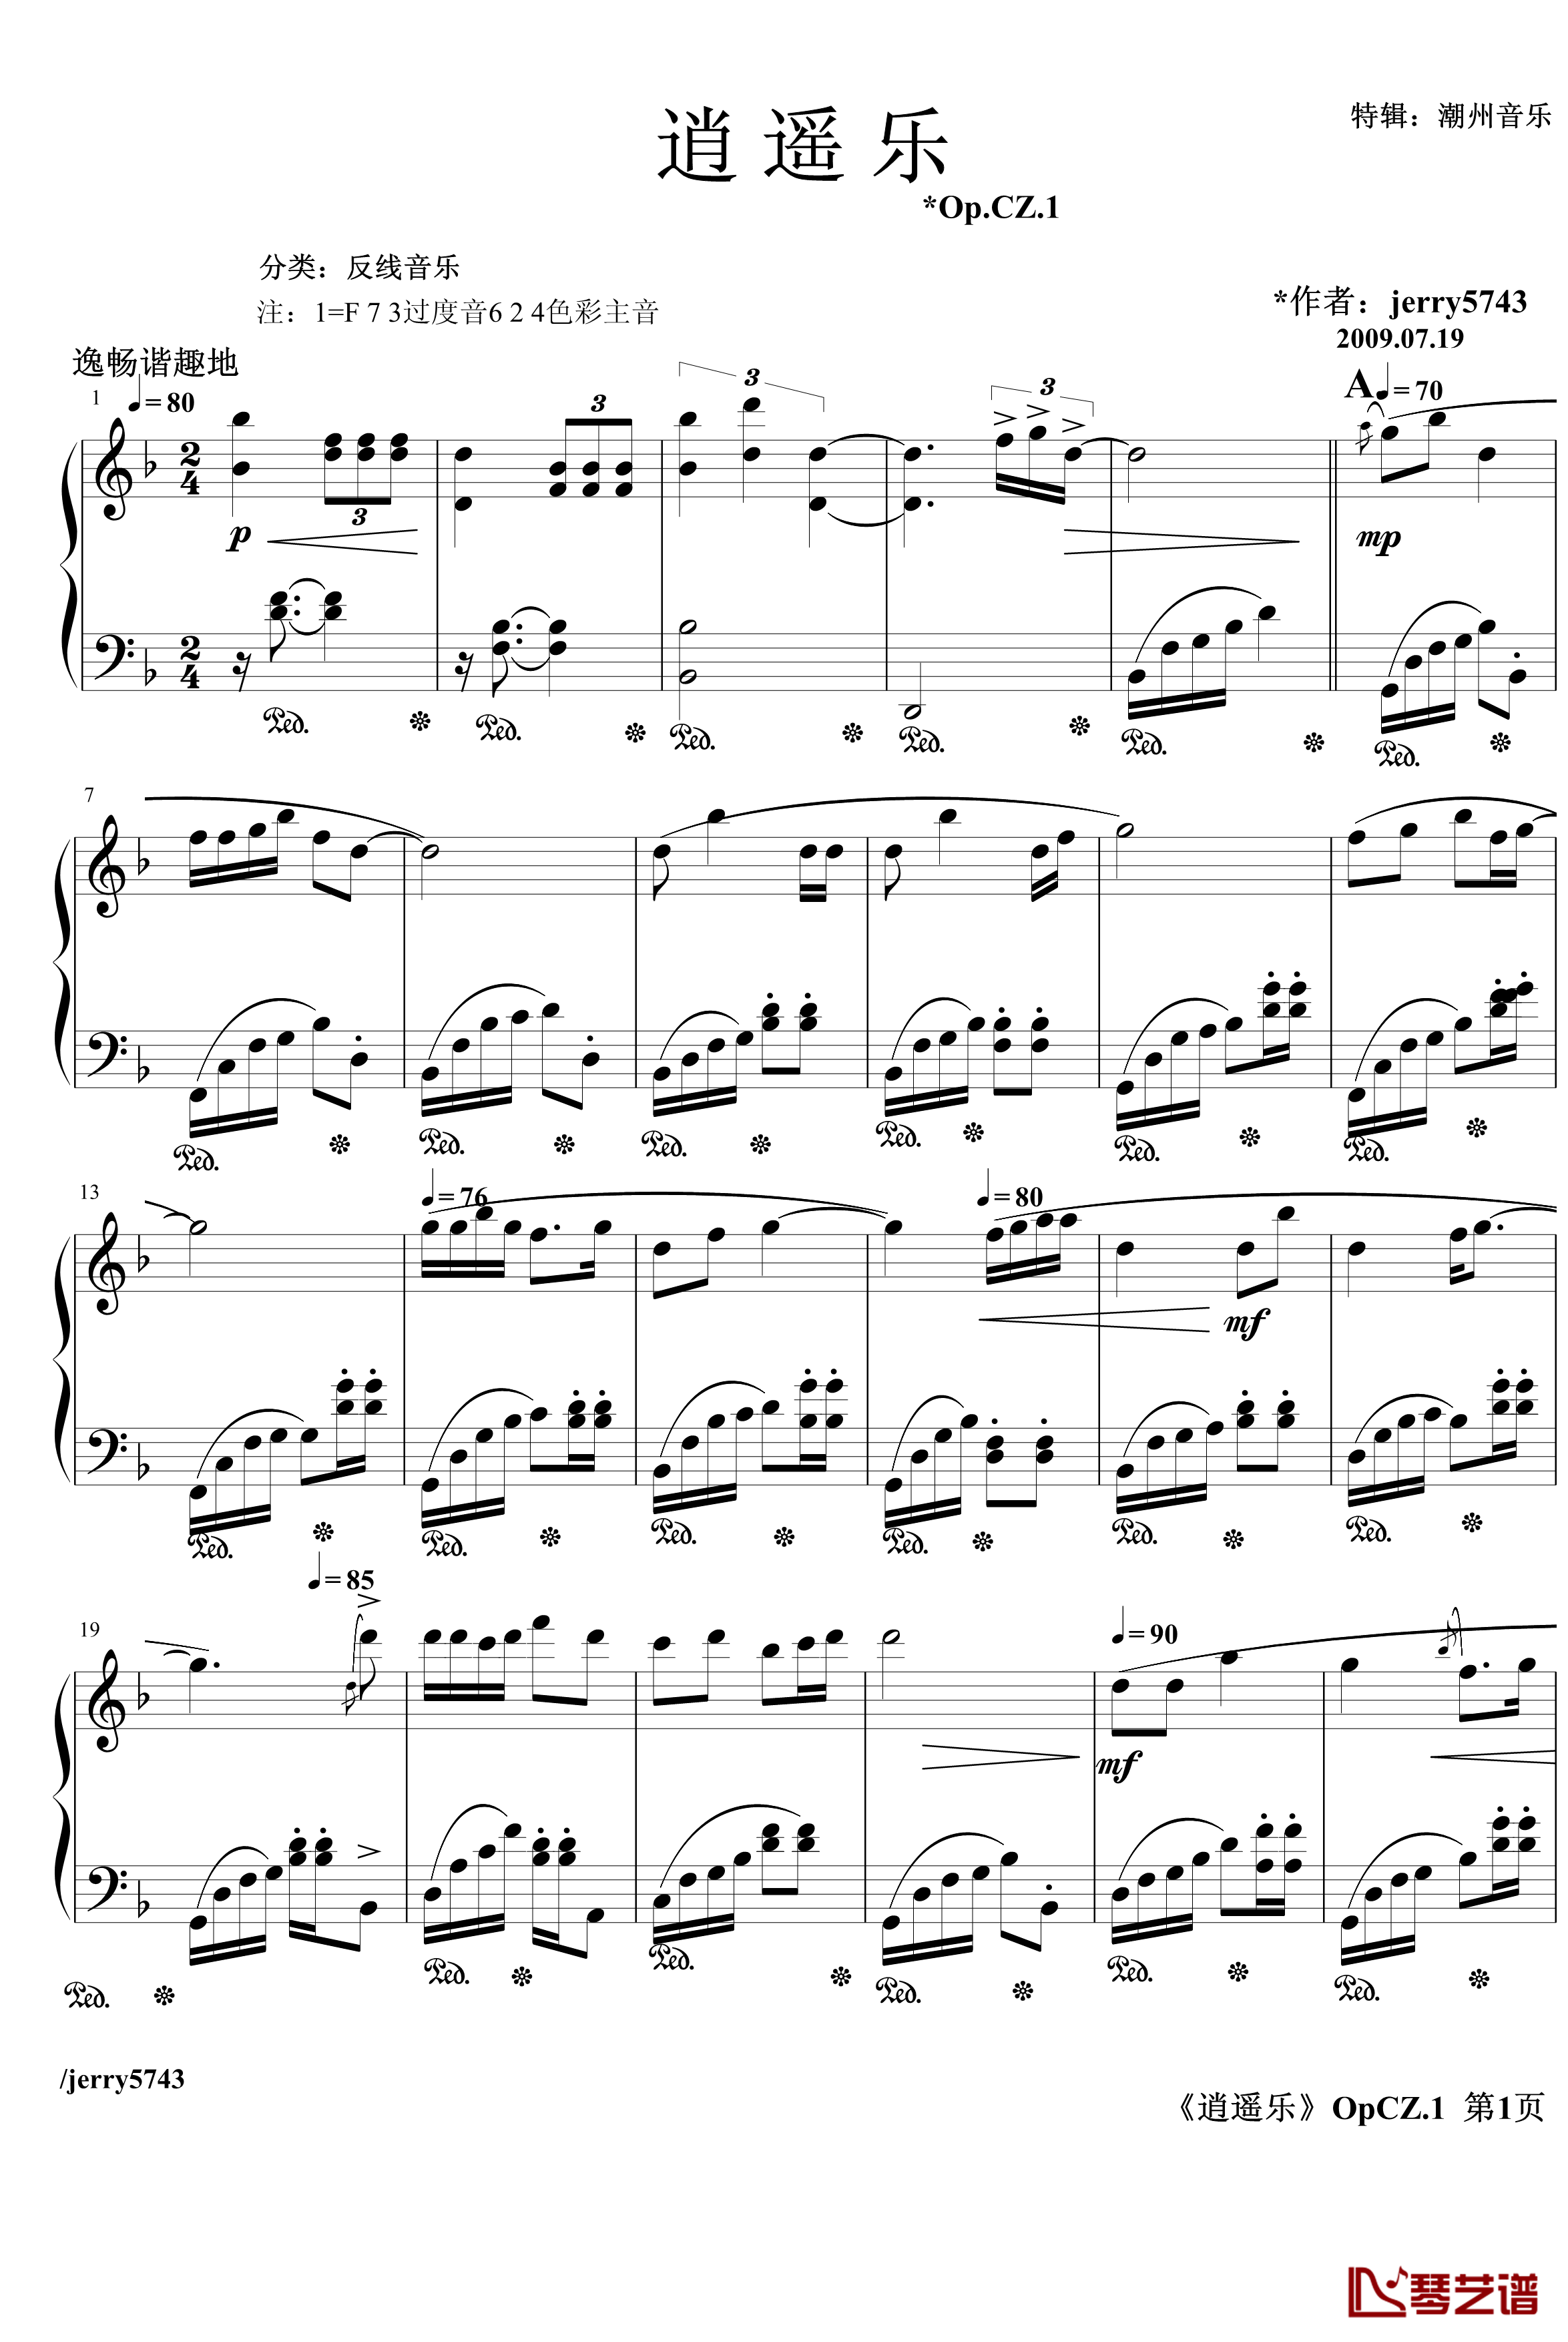 逍遥乐钢琴谱-Op.CZ.1-jerry5743